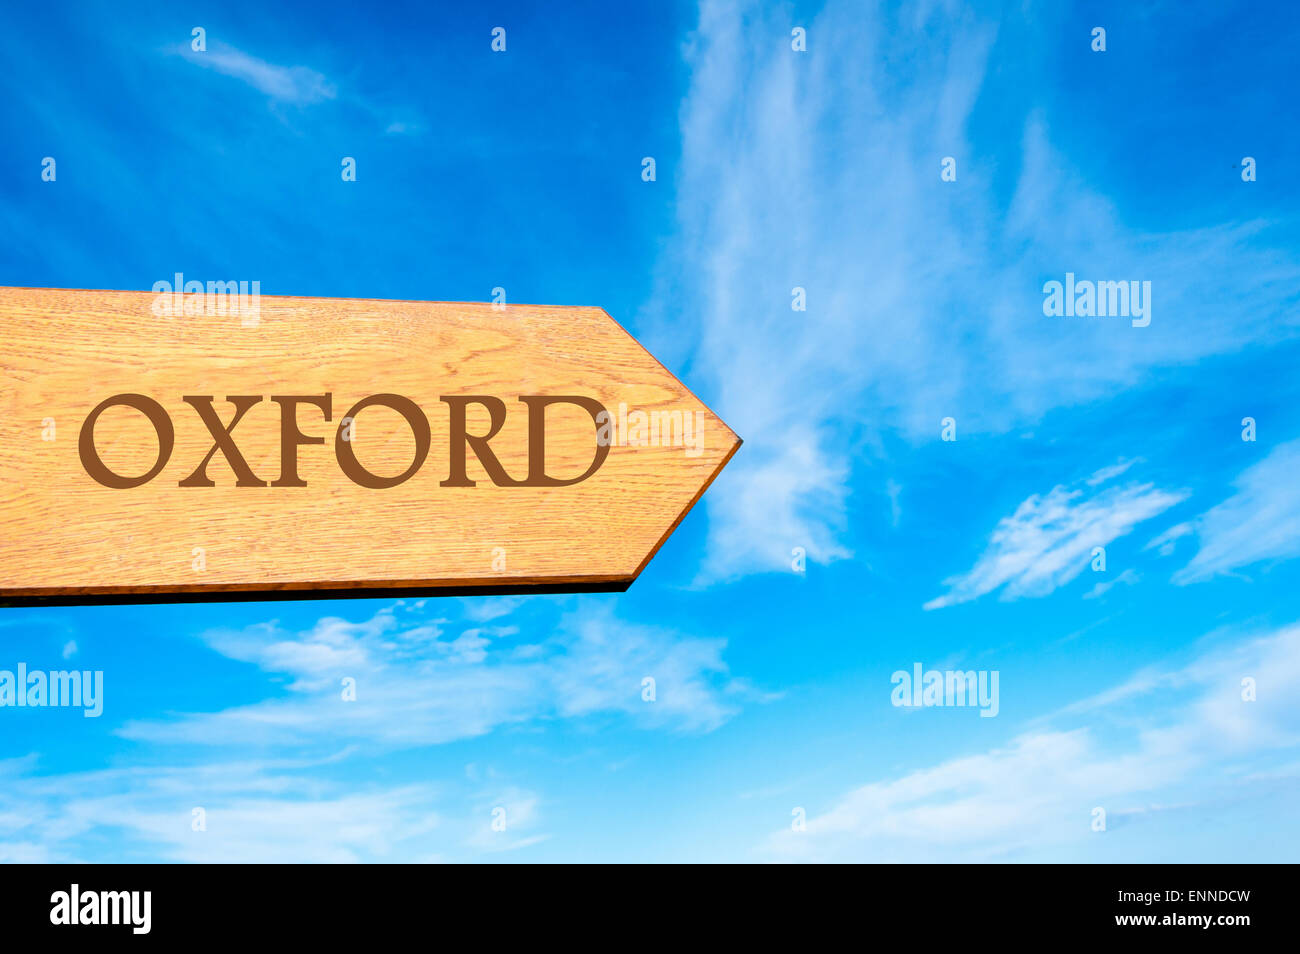 Flèche en bois panneau indiquant la destination Oxford, Angleterre contre ciel bleu clair avec copie espace disponible. Destination Voyage conceptual image Banque D'Images